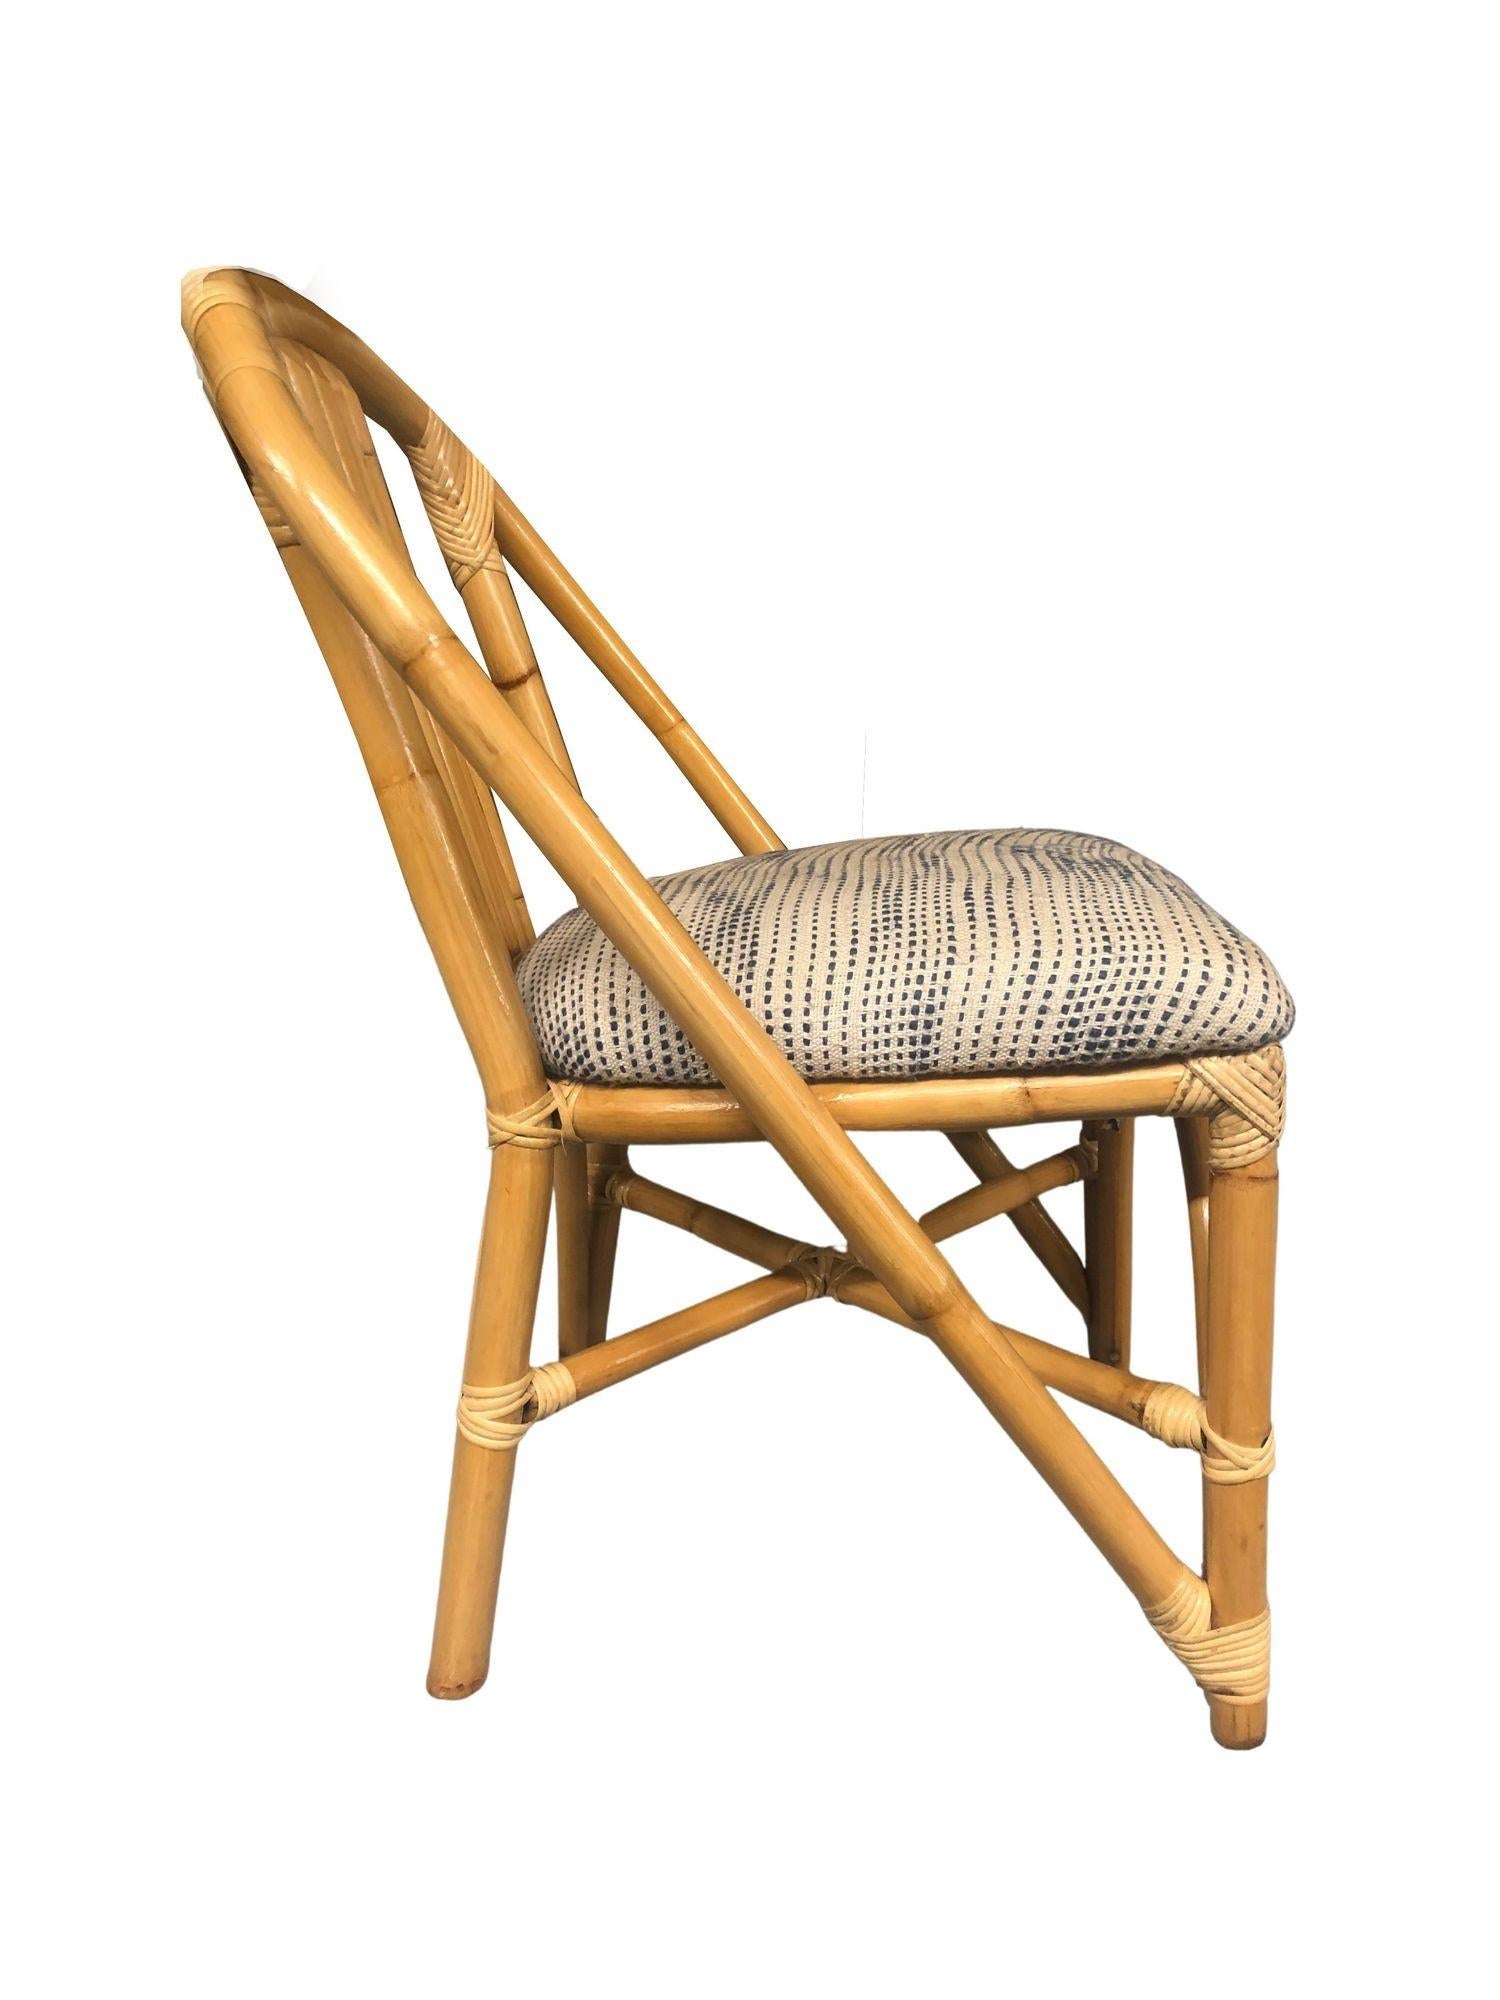 Restaurierte Mid-Century-Ära Rattan Seite Akzent Stuhl mit 5 Strang Rückenlehne mit einem Hufeisen Bogen, der von den vorderen Beinen rund um die Gesamtheit der Stuhl zu einer skulpturalen Rückenlehne Form erstreckt sich. Dieser Beistellstuhl eignet